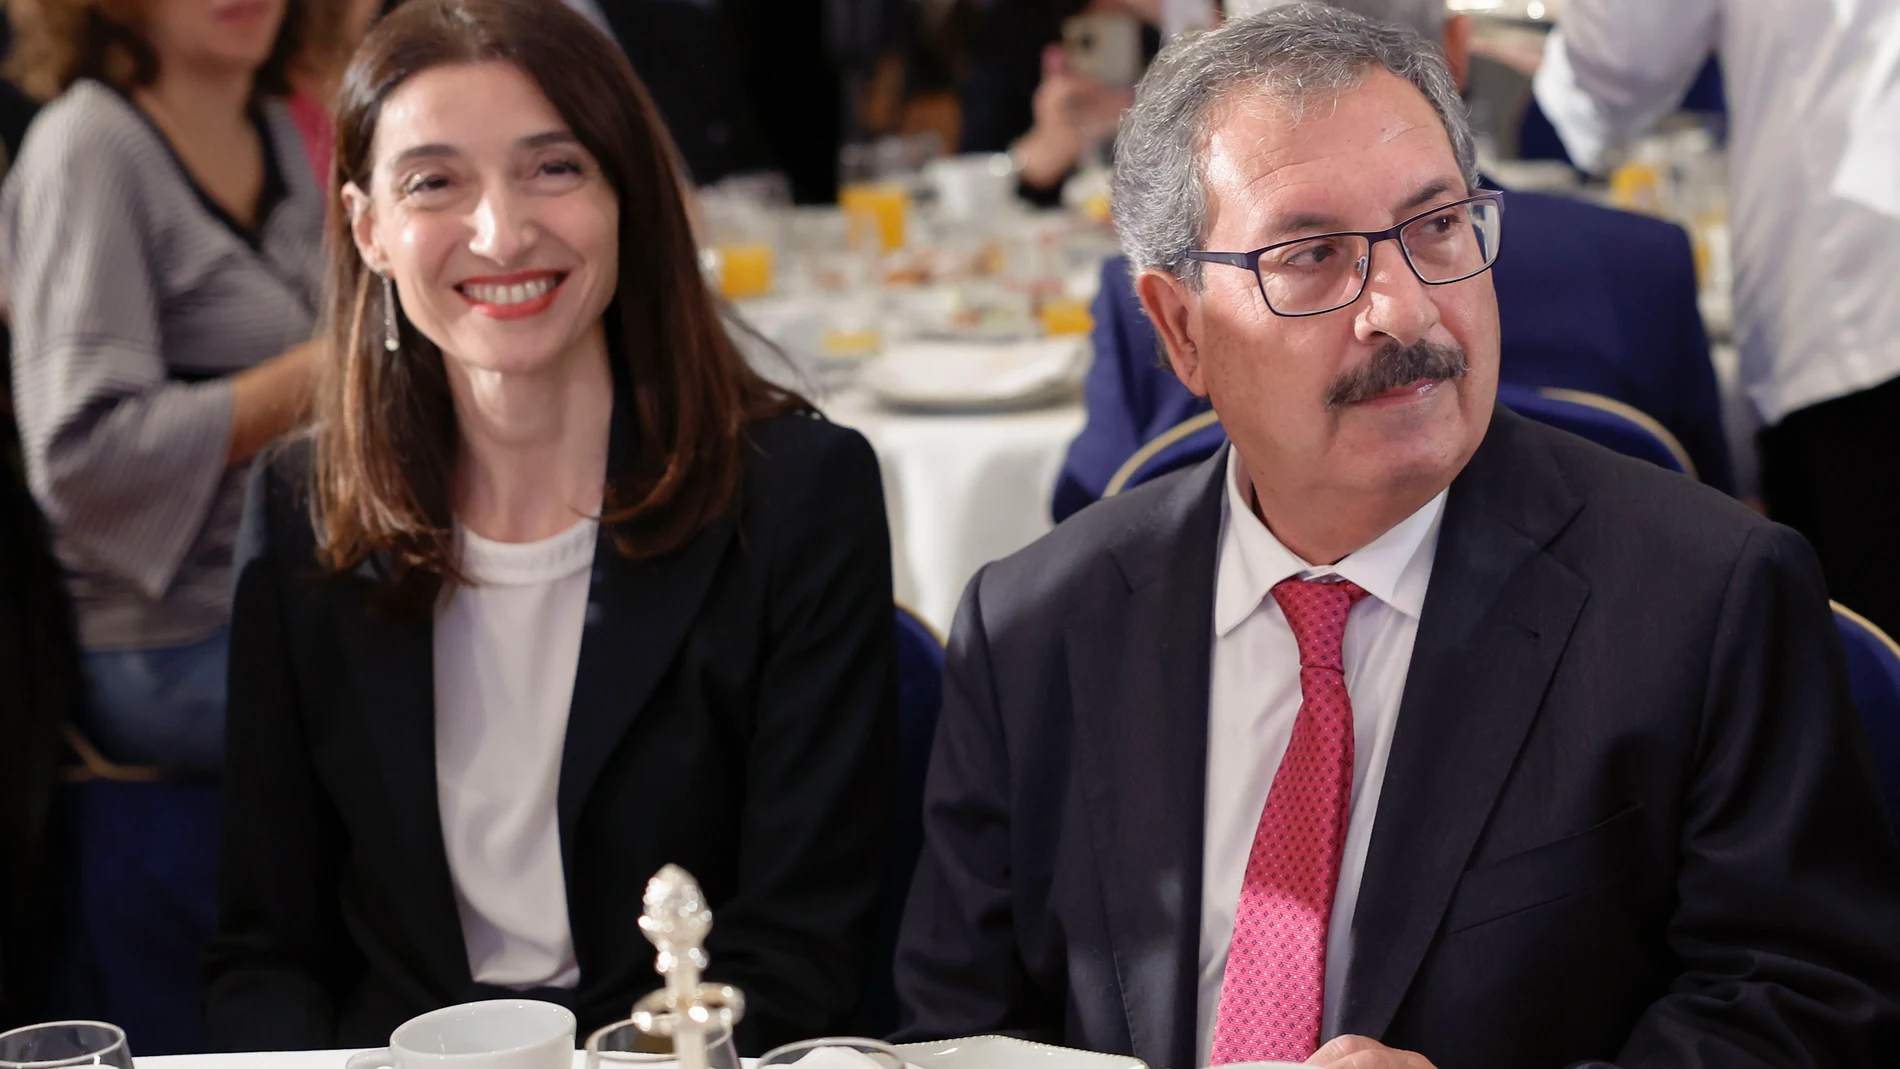 La ministra de Justicia, Pilar Llop, y el presidente del CGPJ, Rafael Mozo, durante su participación en el desayuno informativo del Fórum Europa celebrado este jueves en Madrid